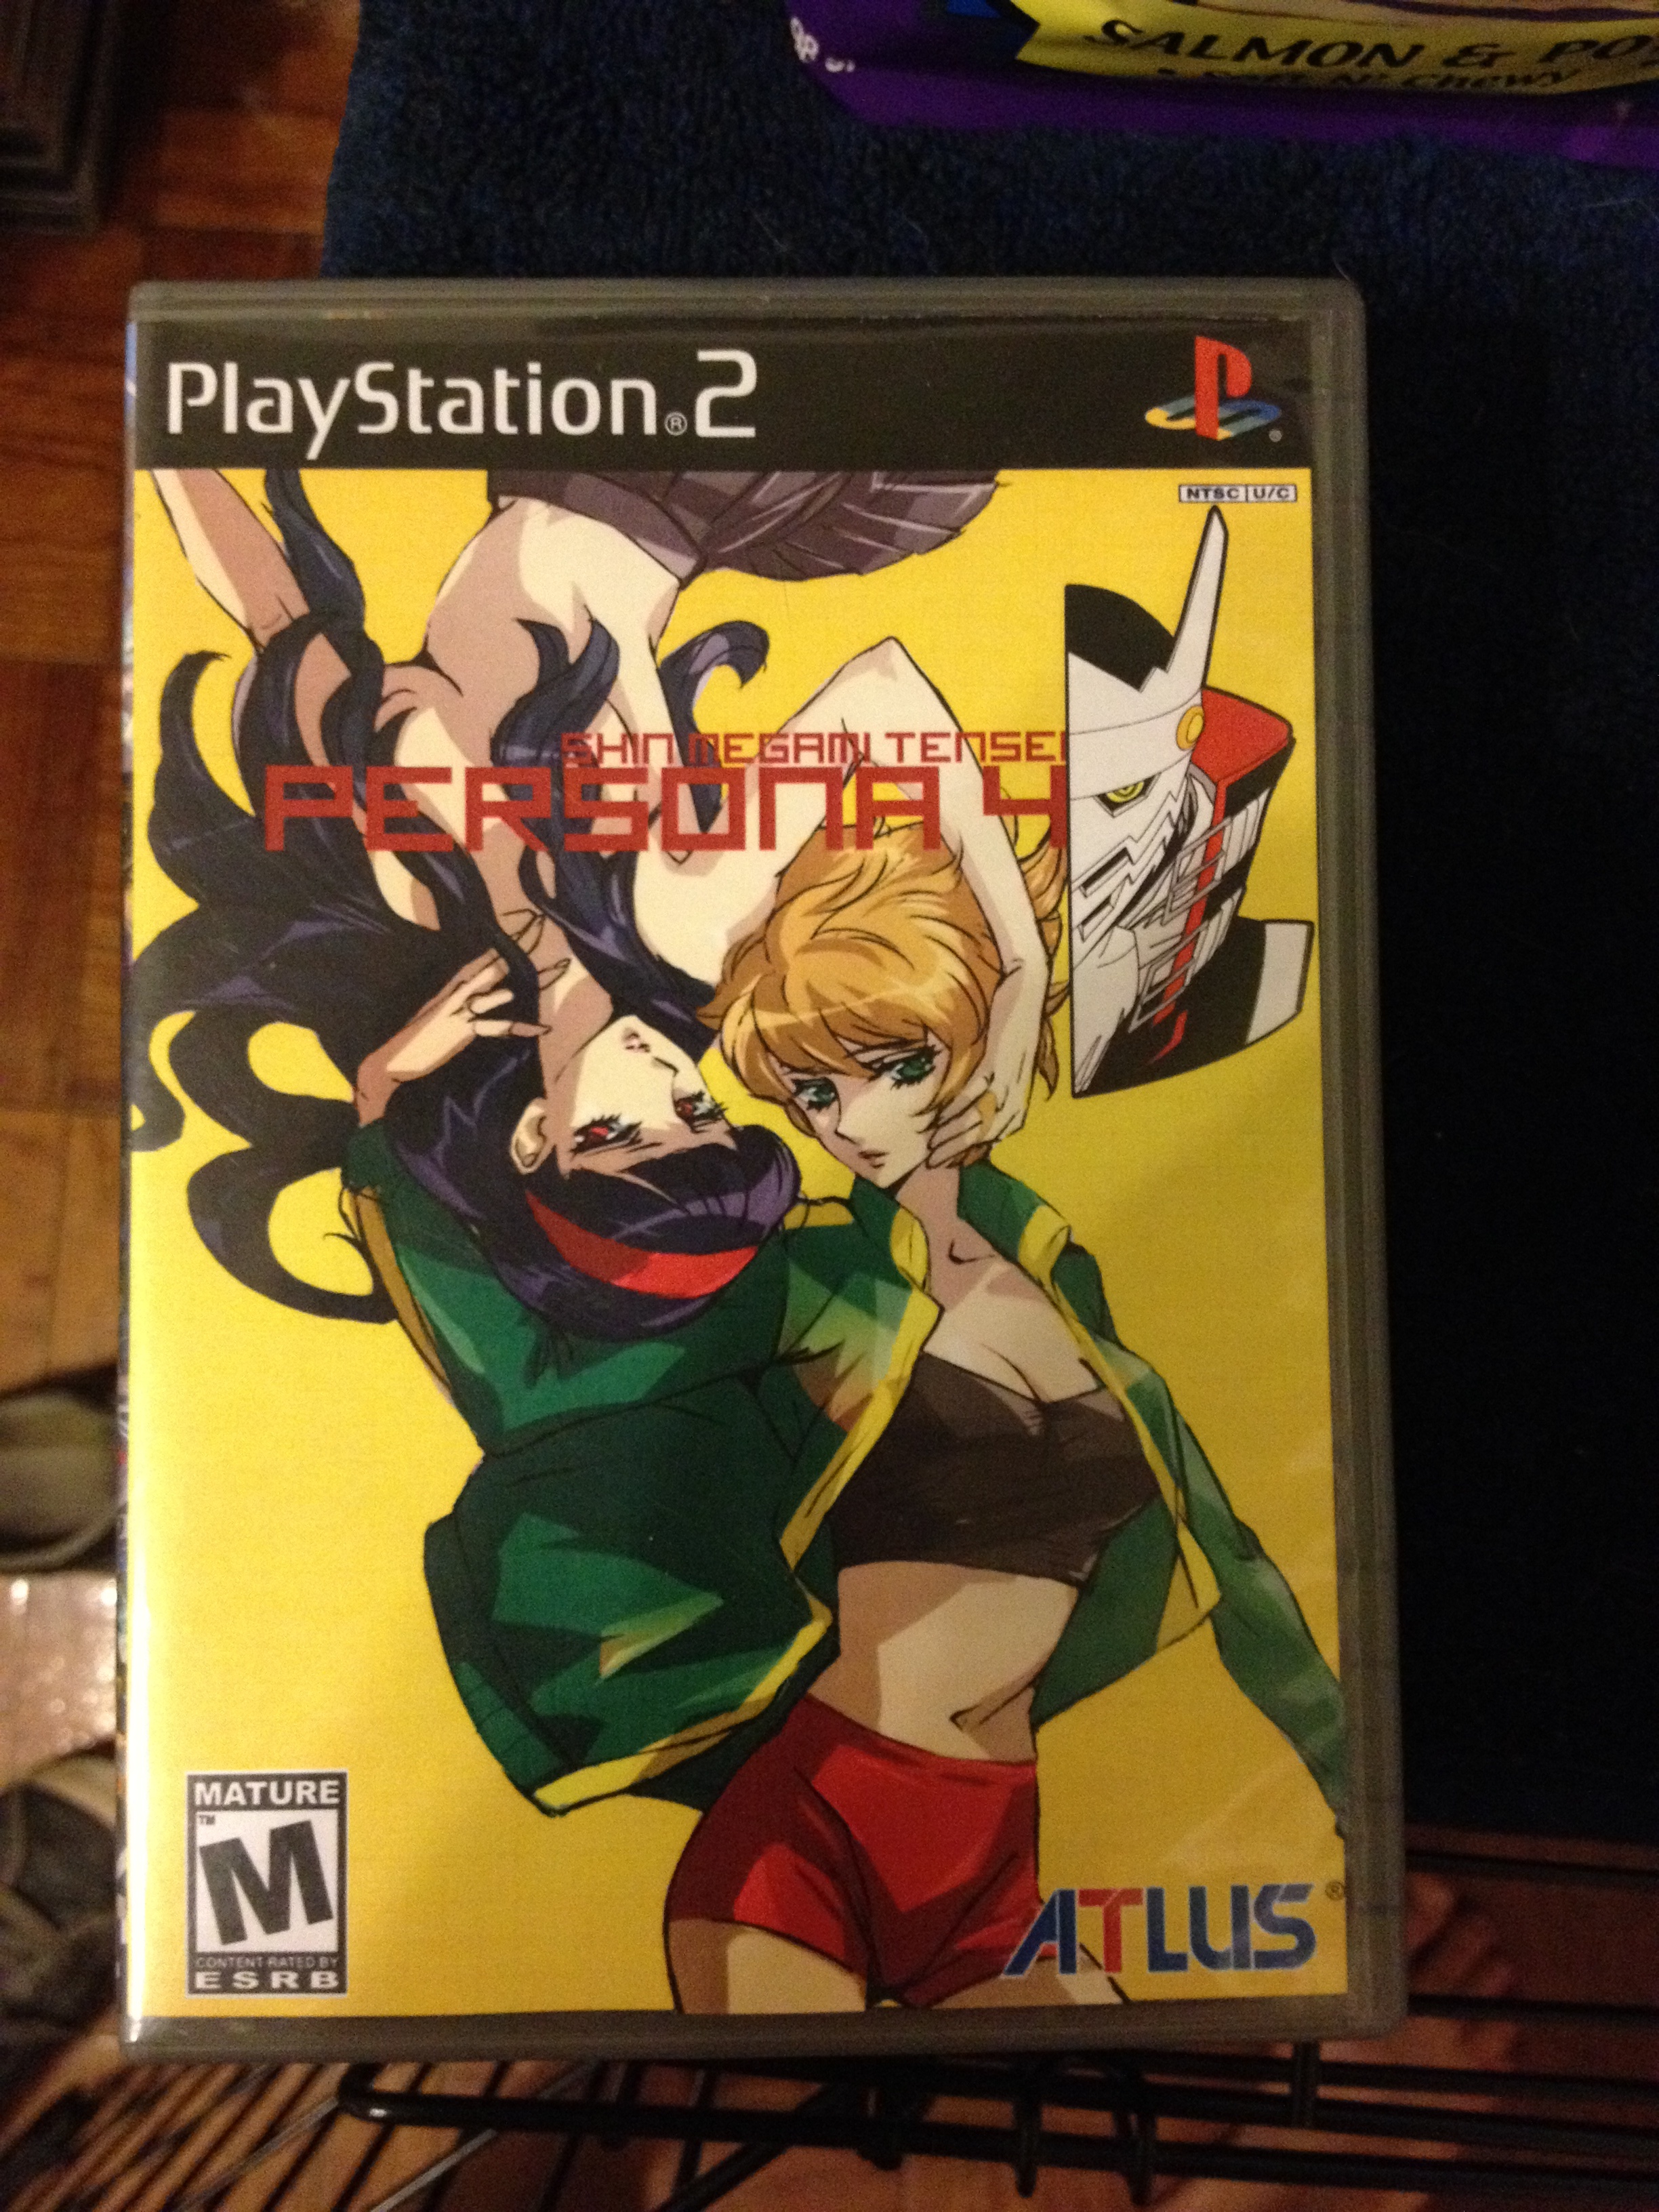 Shin Megami Tensei: Persona 4 box cover